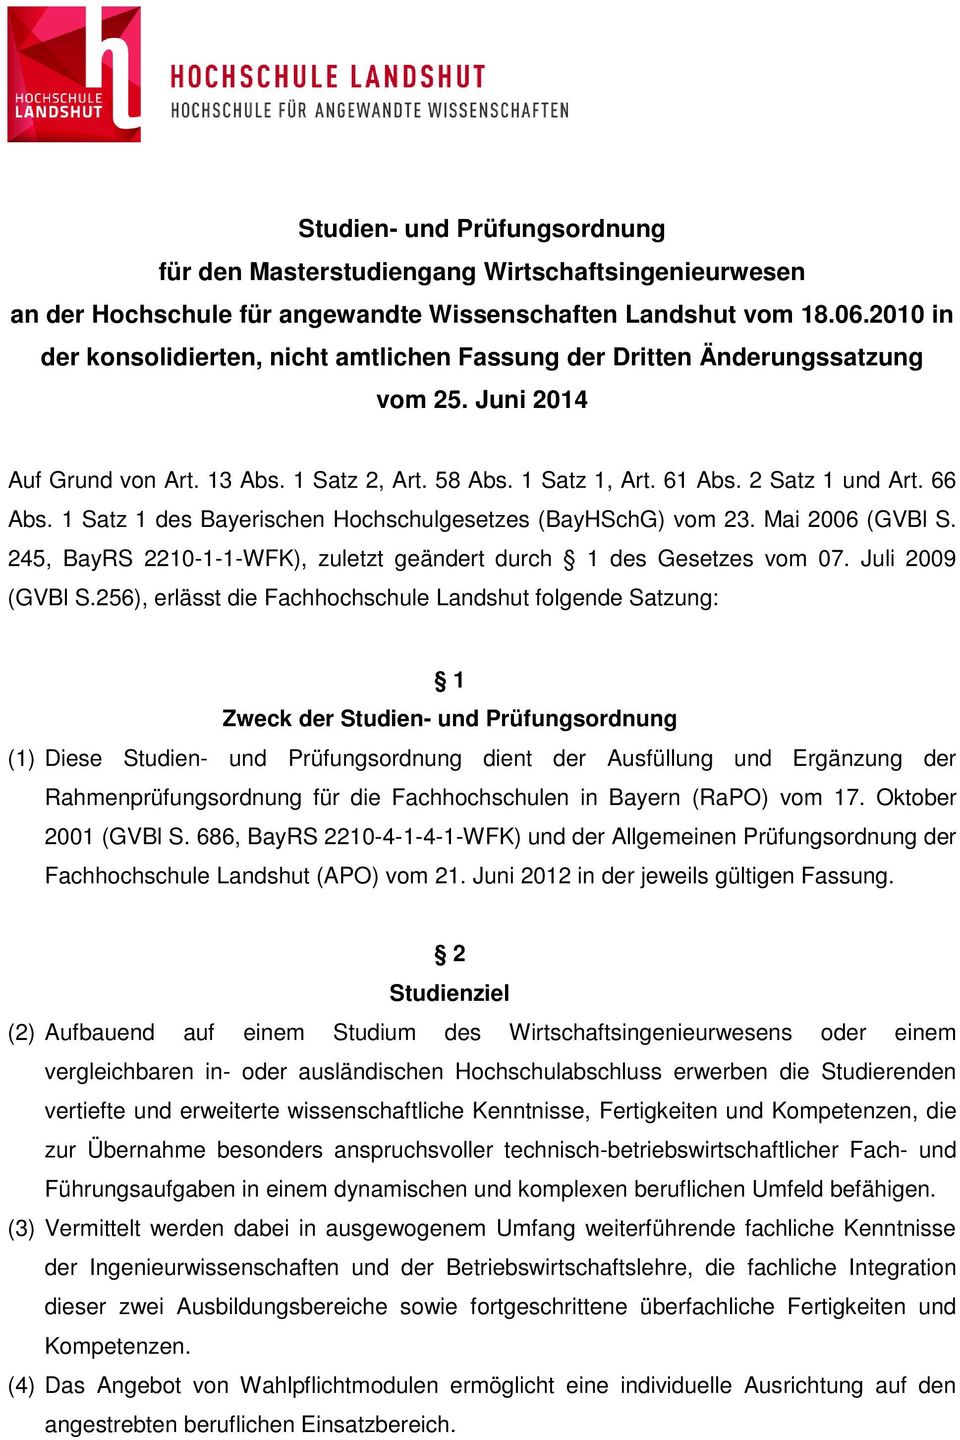 1 Satz 1 des Bayerischen Hochschulgesetzes (BayHSchG) vom 23. Mai 2006 (GVBl S. 245, BayRS 2210-1-1-WFK), zuletzt geändert durch 1 des Gesetzes vom 07. Juli 2009 (GVBl S.